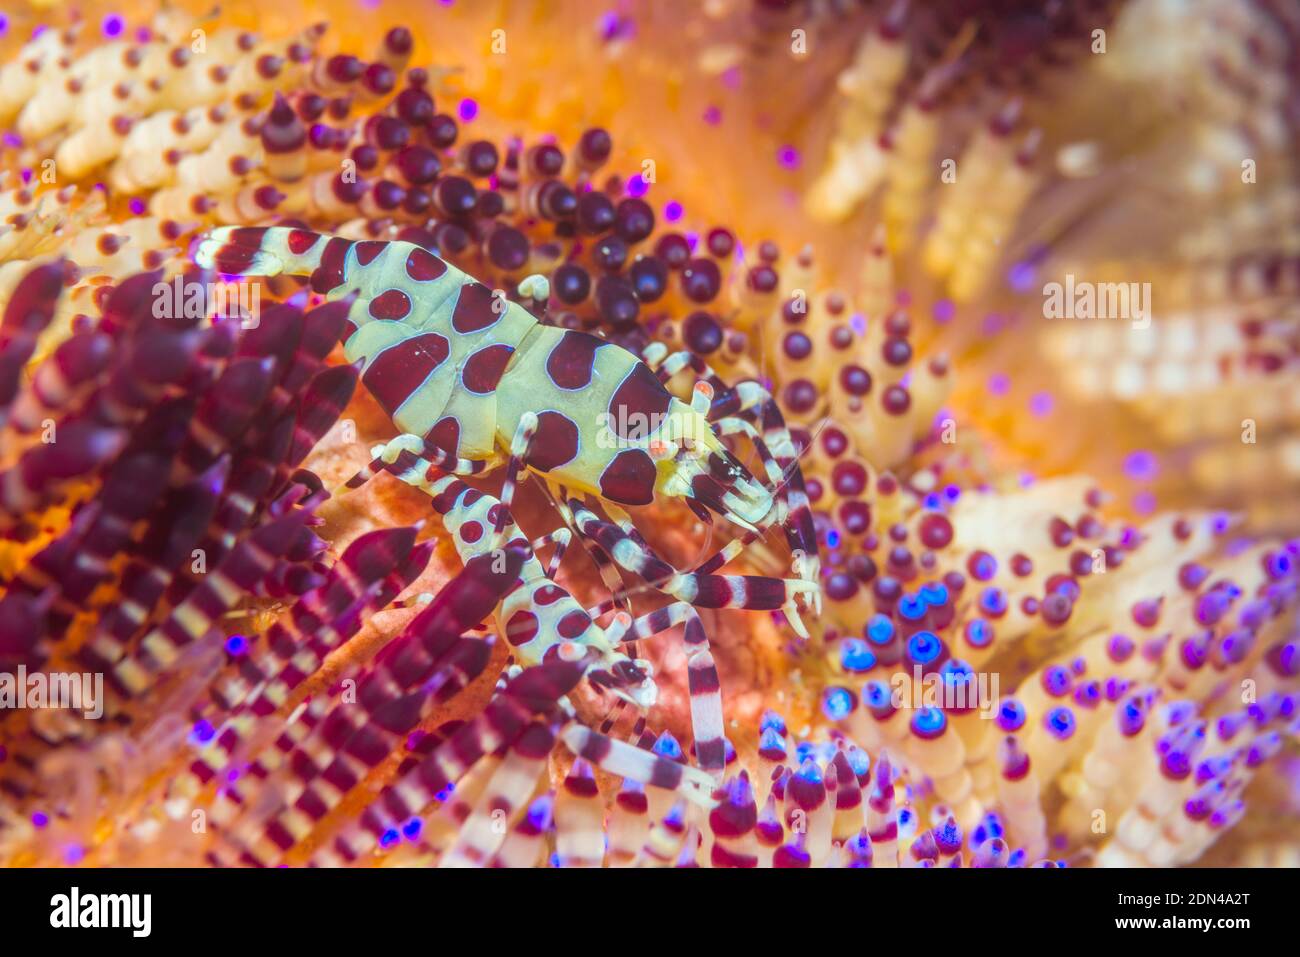 Coleman Shrimp [Periclemenes colemani] on Toxic Sea Urchin [Asthenosoma ijimai].  Lembeh Strait, North Sulawesi, Indonesia. Stock Photo